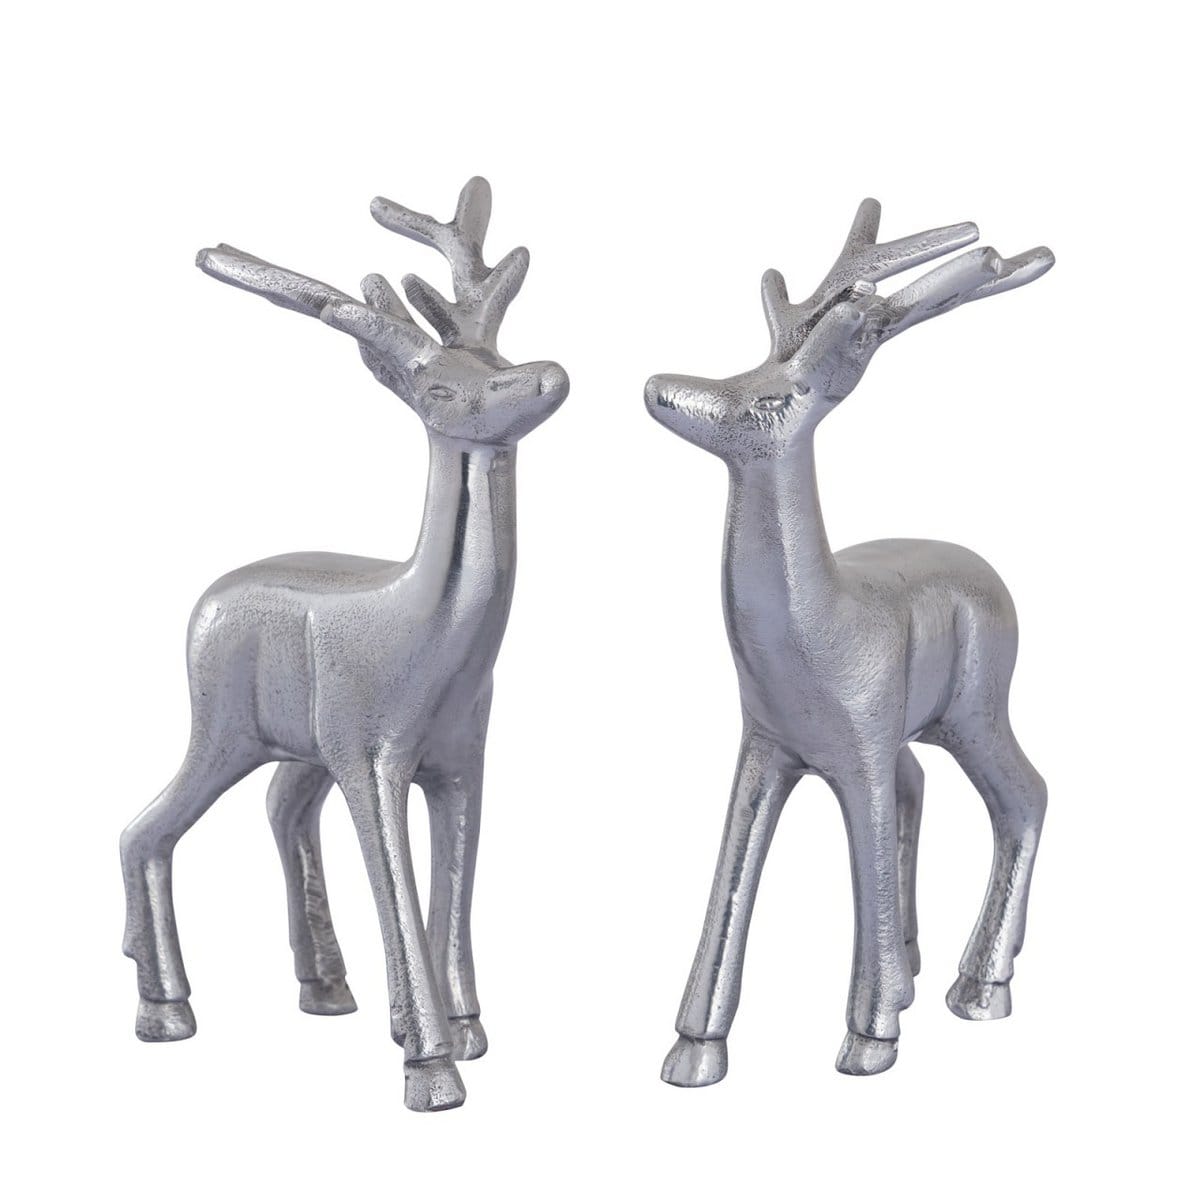 Voglrieder kreatives Wohnen Deco figuren set van 2 herten tafeldecoratie dierenfiguur metaal kerstdecoratie zilver of goud aluminium